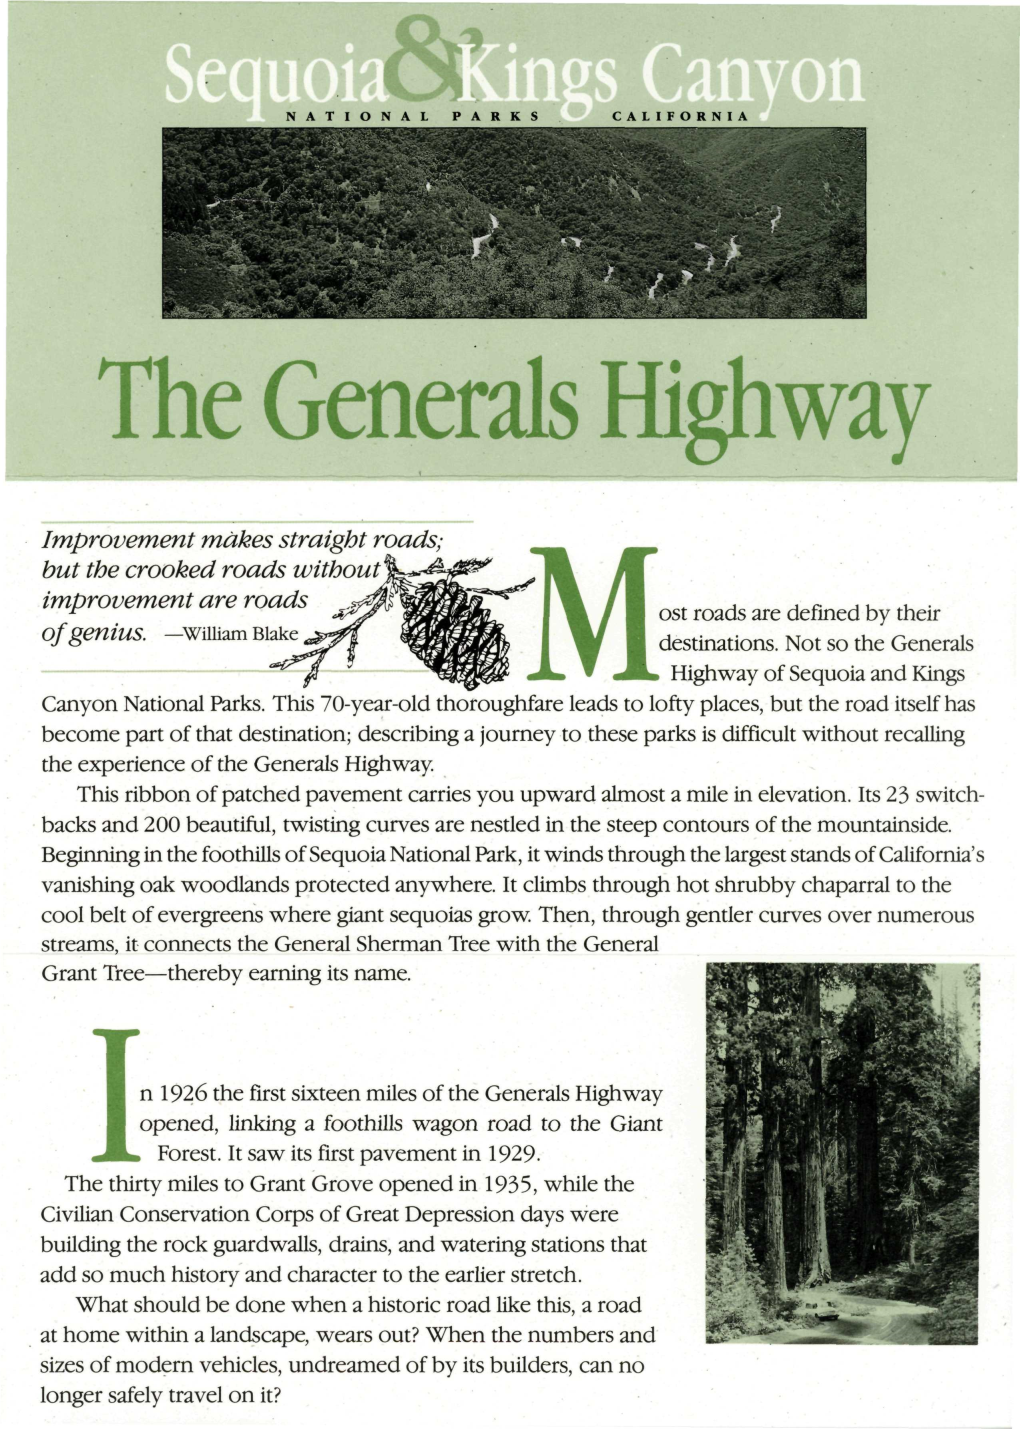 The Generals Highway